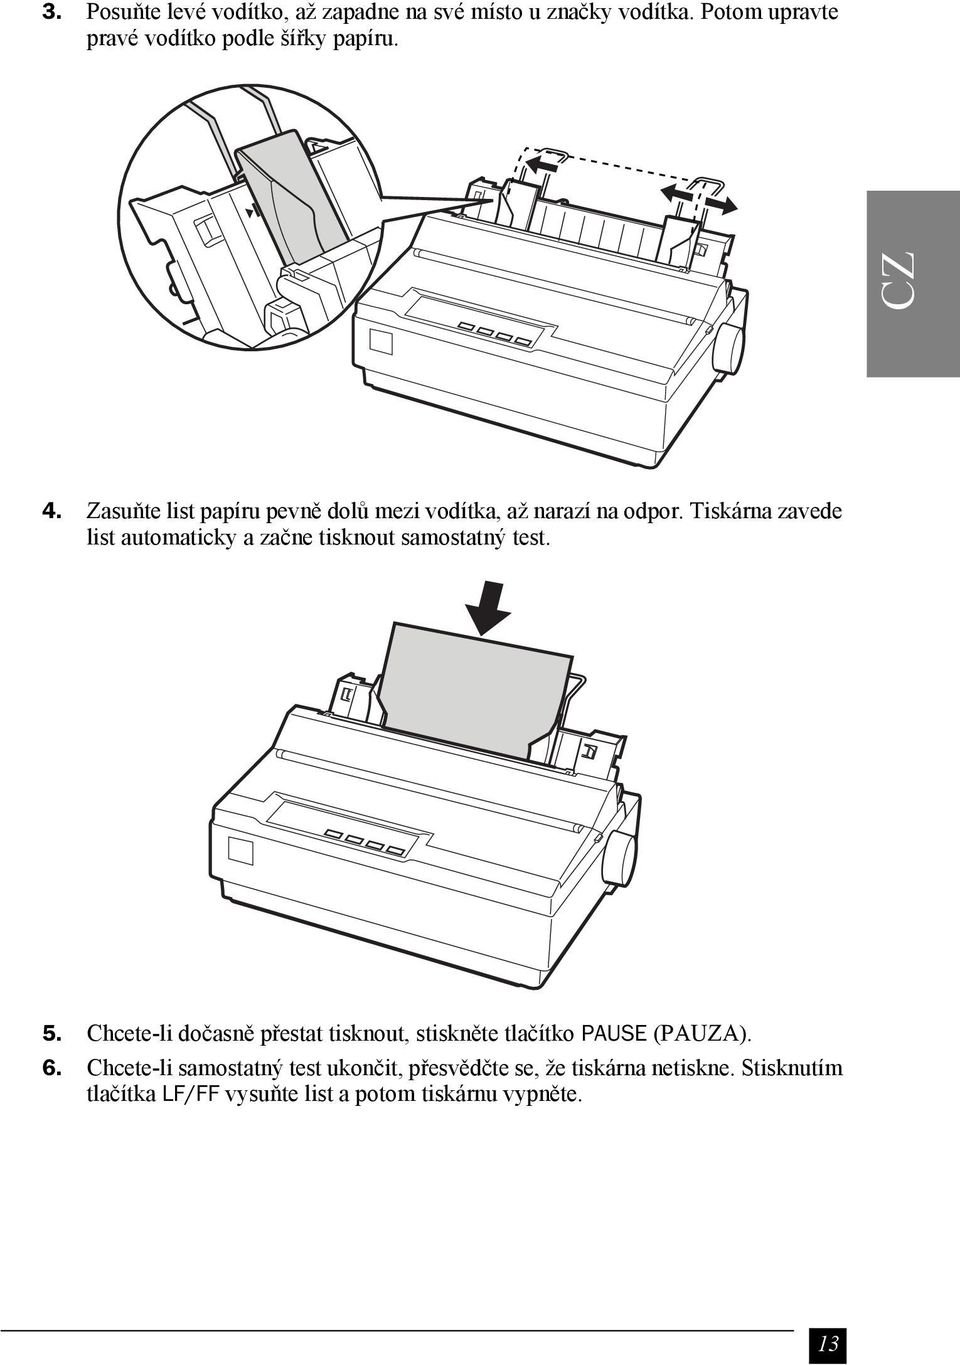 Tiskárna zavede list automaticky a začne tisknout samostatný test. 5.